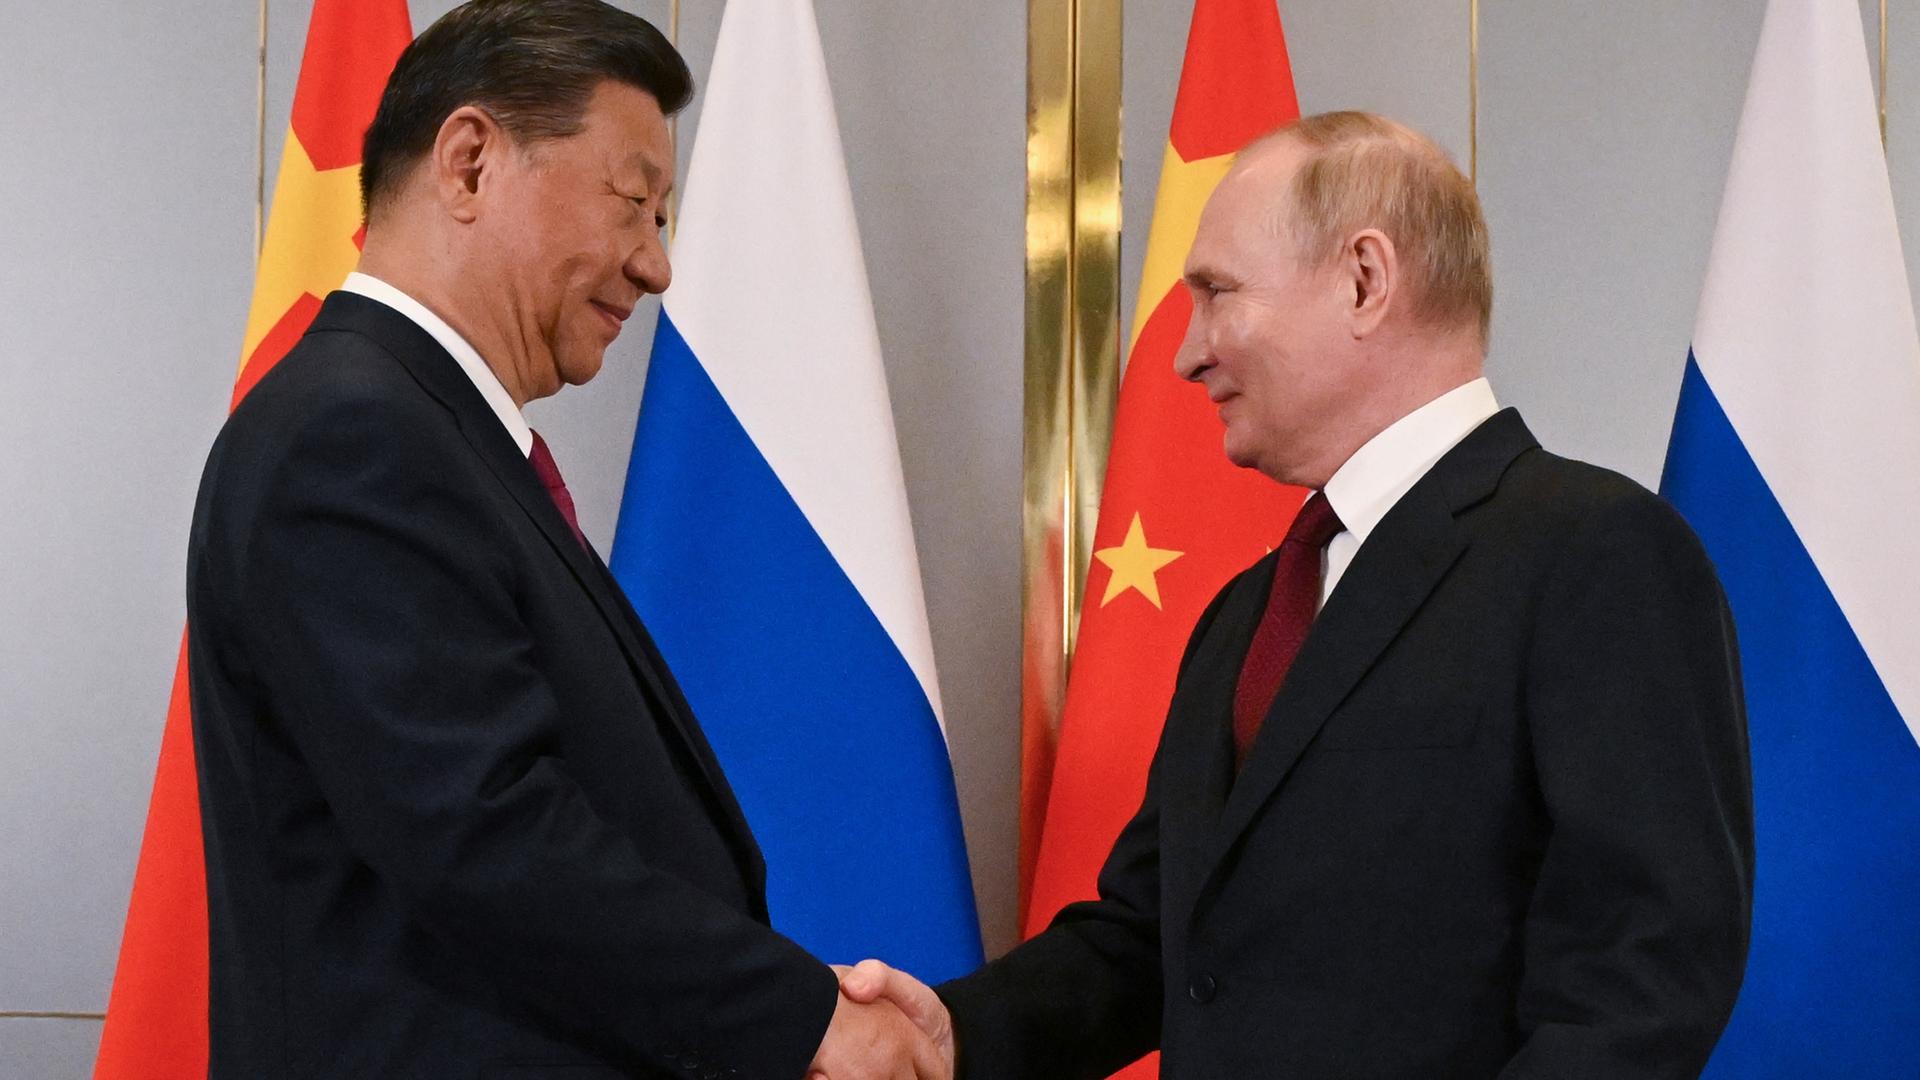 Der chinesische Präsident Xi Jinping (l.) und der russische Präsident Wladimir Putin schütteln Hände am Rande des Gipfels der Shanghaier Organisation für Zusammenarbeit in Astana, Kasachstan. Im Hintergrund russische und die chinesische Flagge.